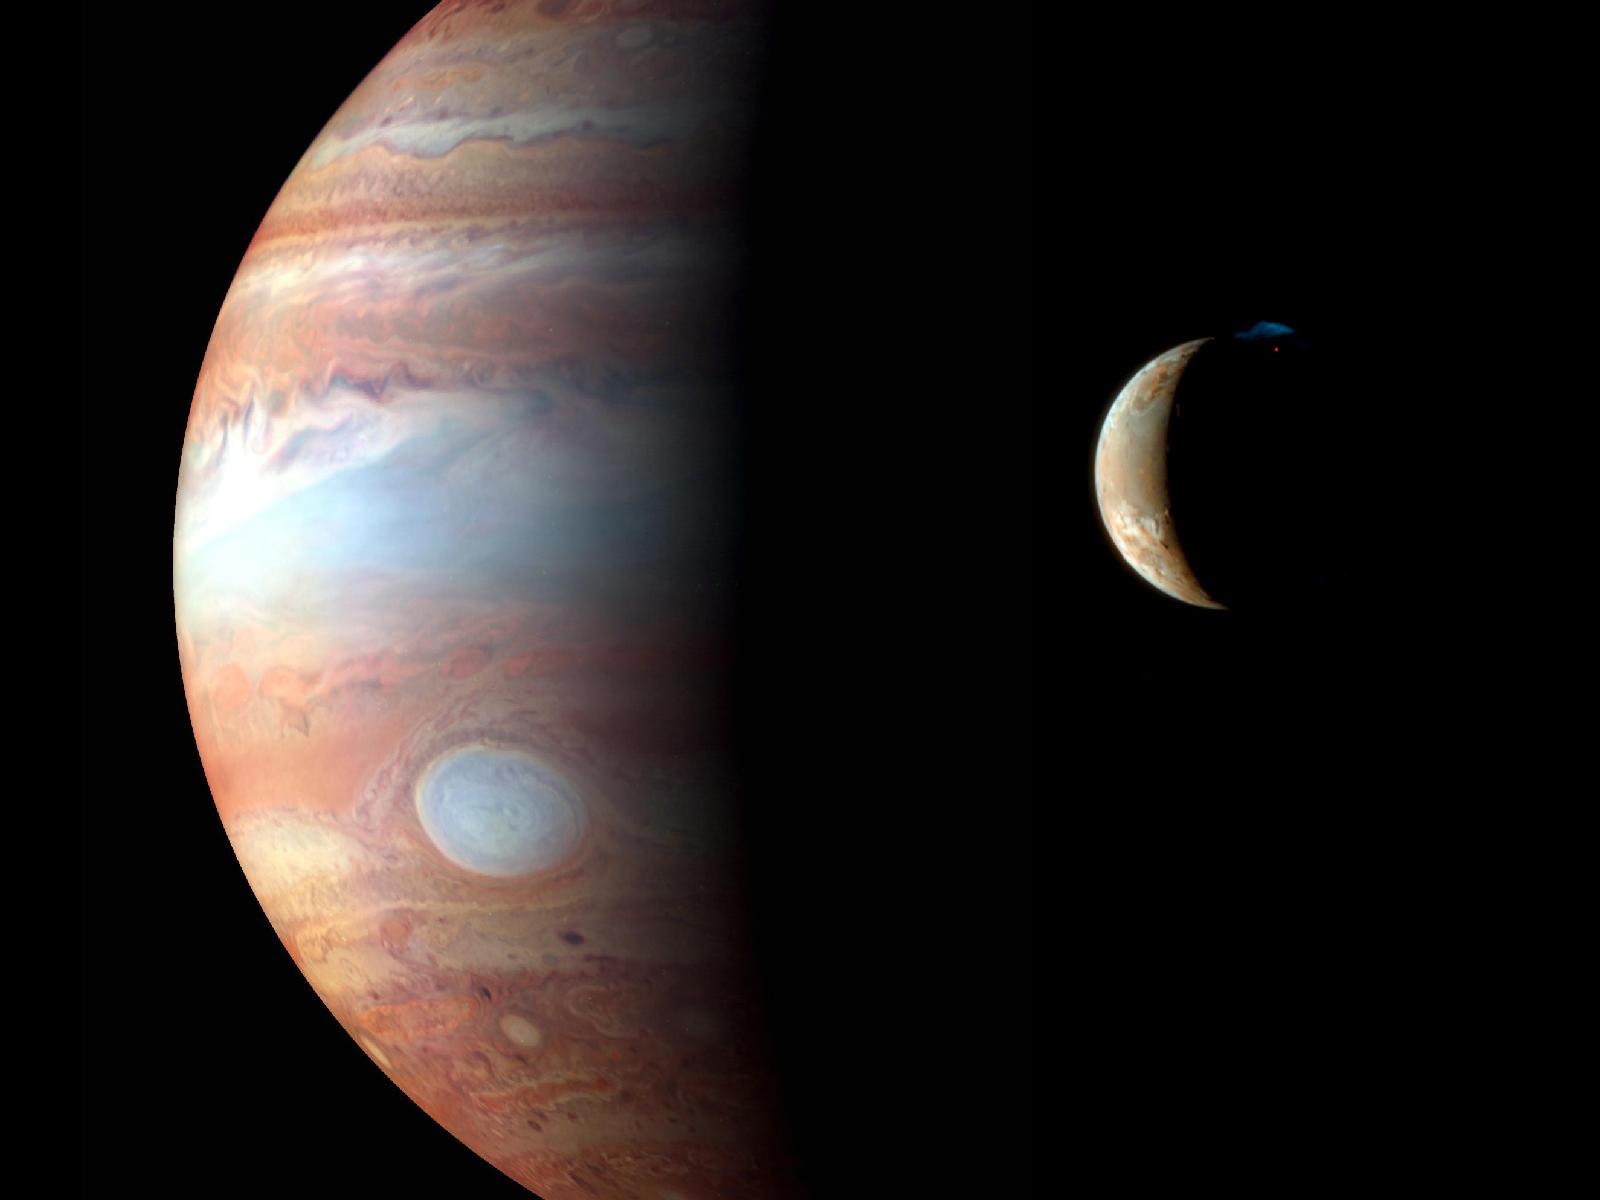 Croissant de Io saisi le 21 octobre 2010 à l'aide d'un télescope de 23 centimètres de diamètre et d'une caméra CCD. © R. Morini